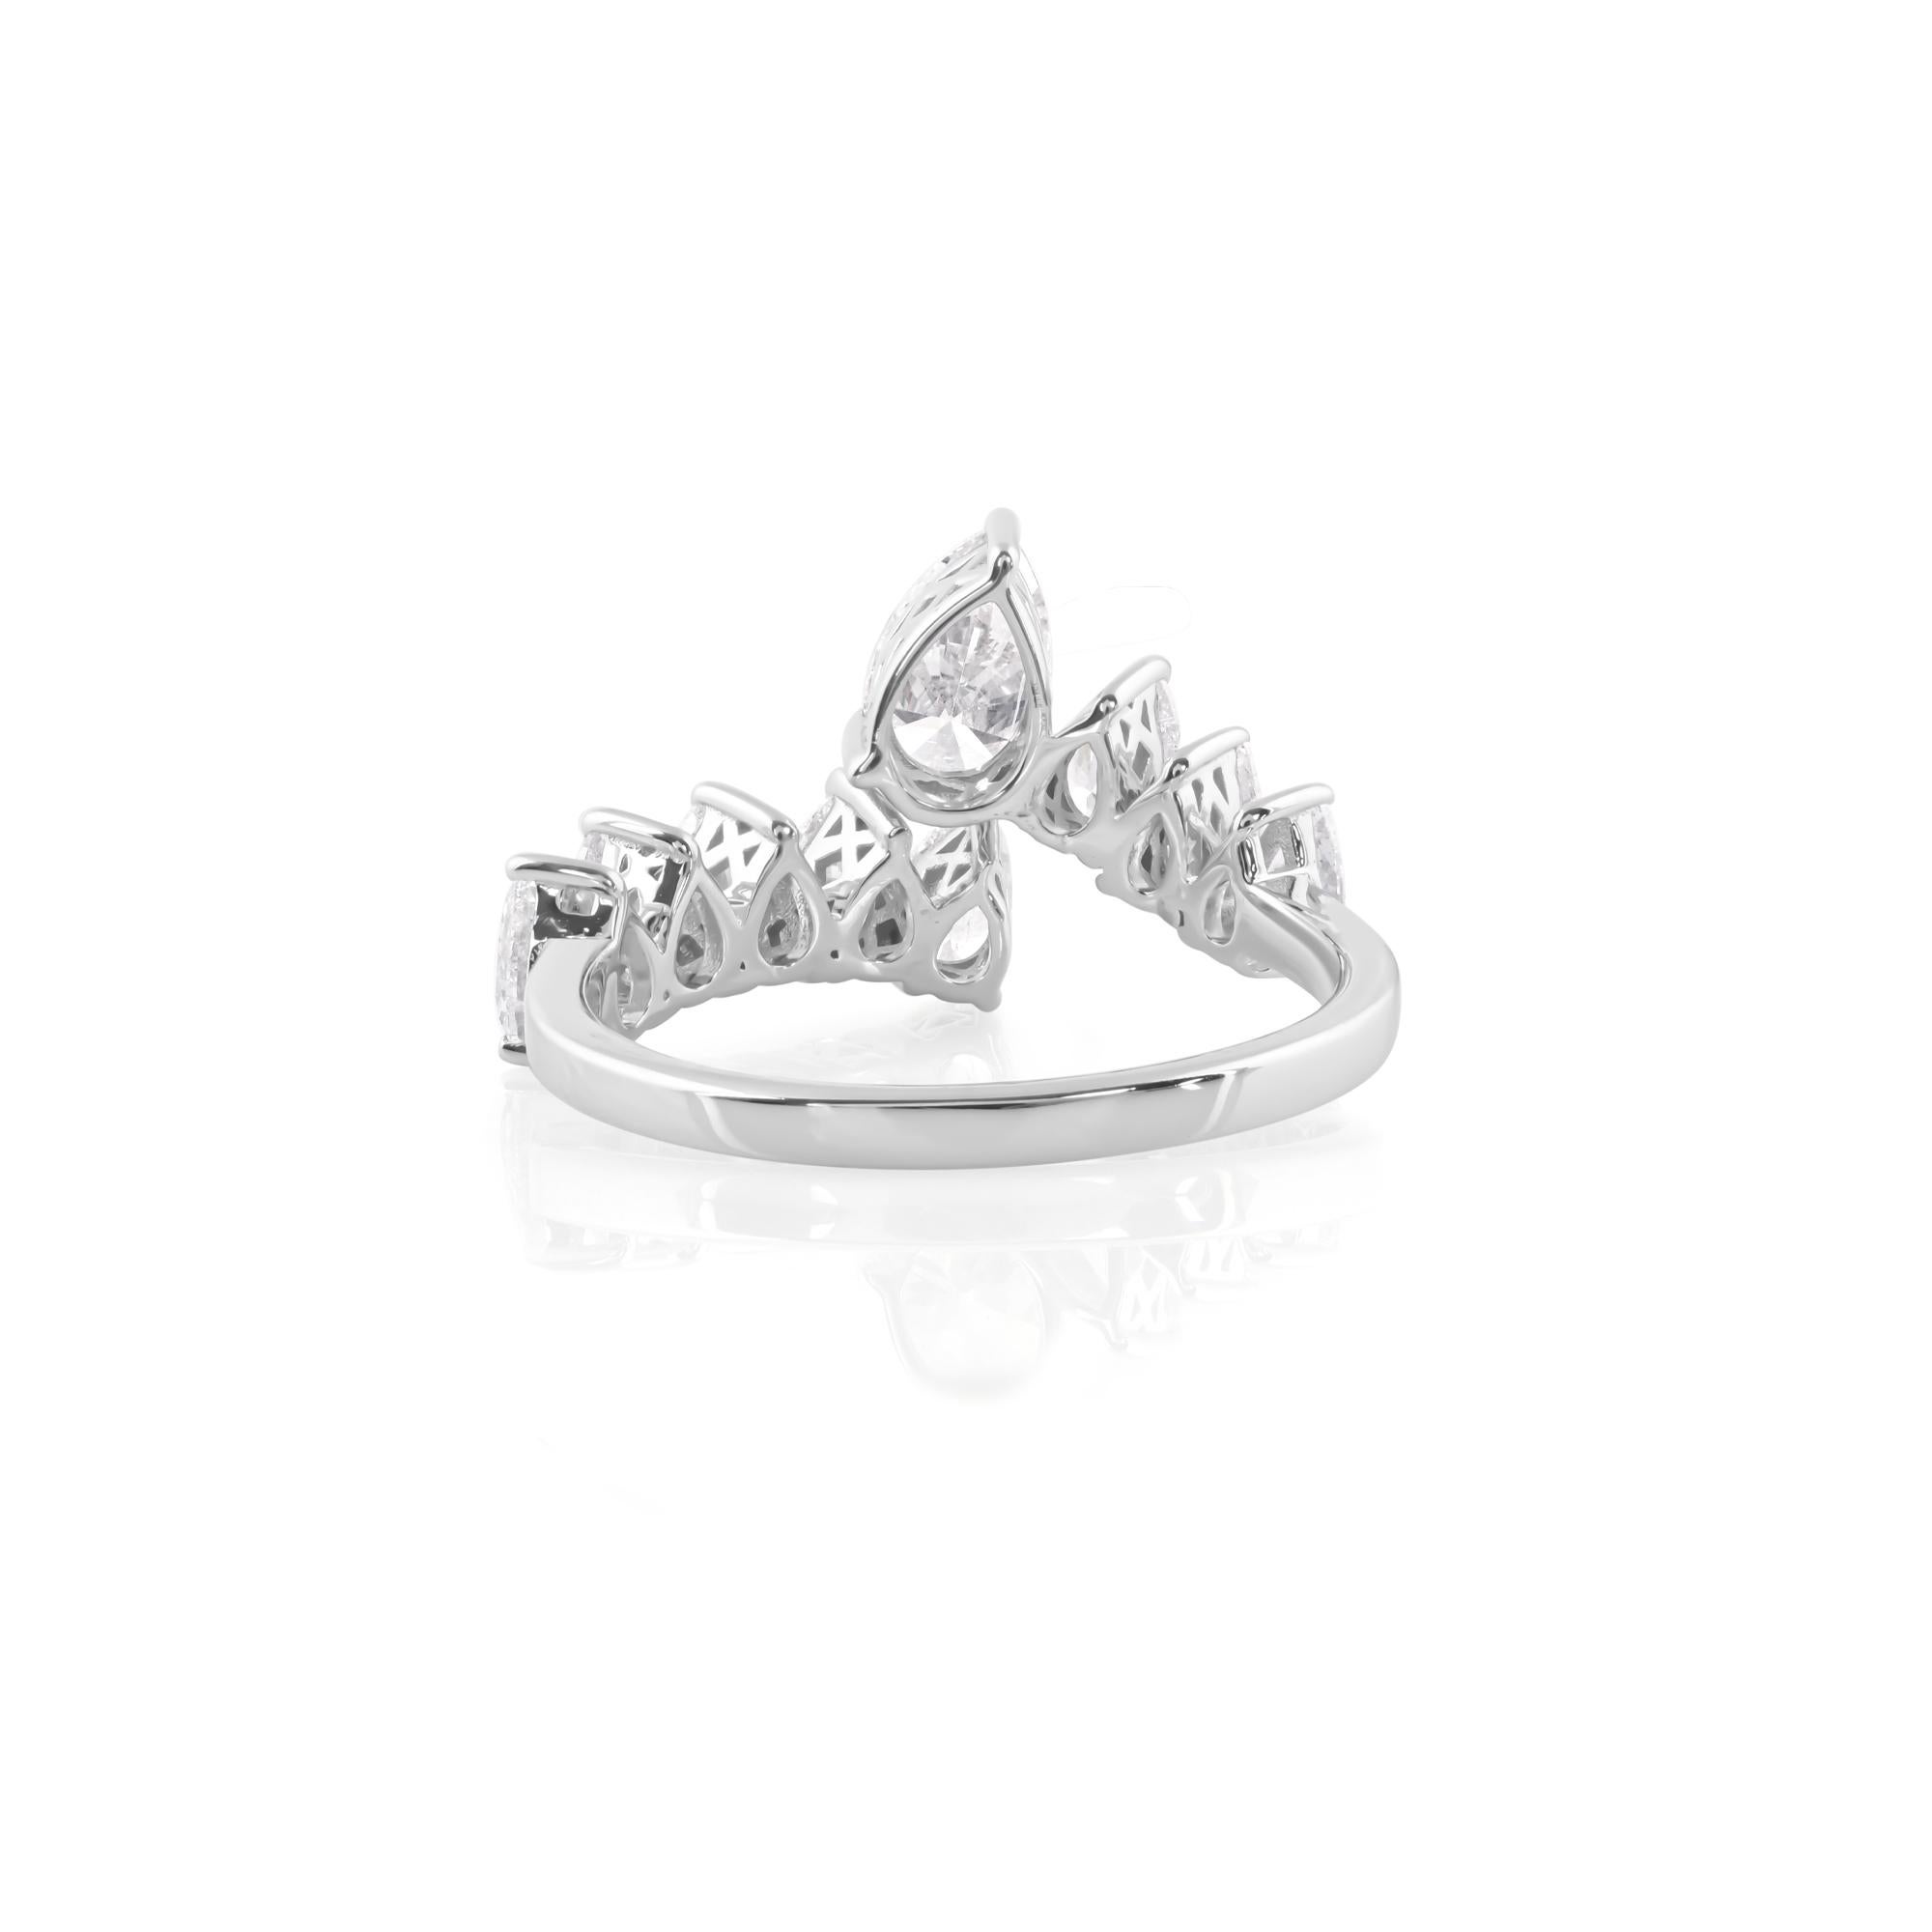 Das Herzstück dieses bezaubernden Rings ist ein prächtiger birnenförmiger Diamant mit einem bemerkenswerten Wert von 1,85 Karat reiner Brillanz. Dieser aus den besten Minen stammende Diamant ist mit seinem unvergleichlichen Funkeln und seiner